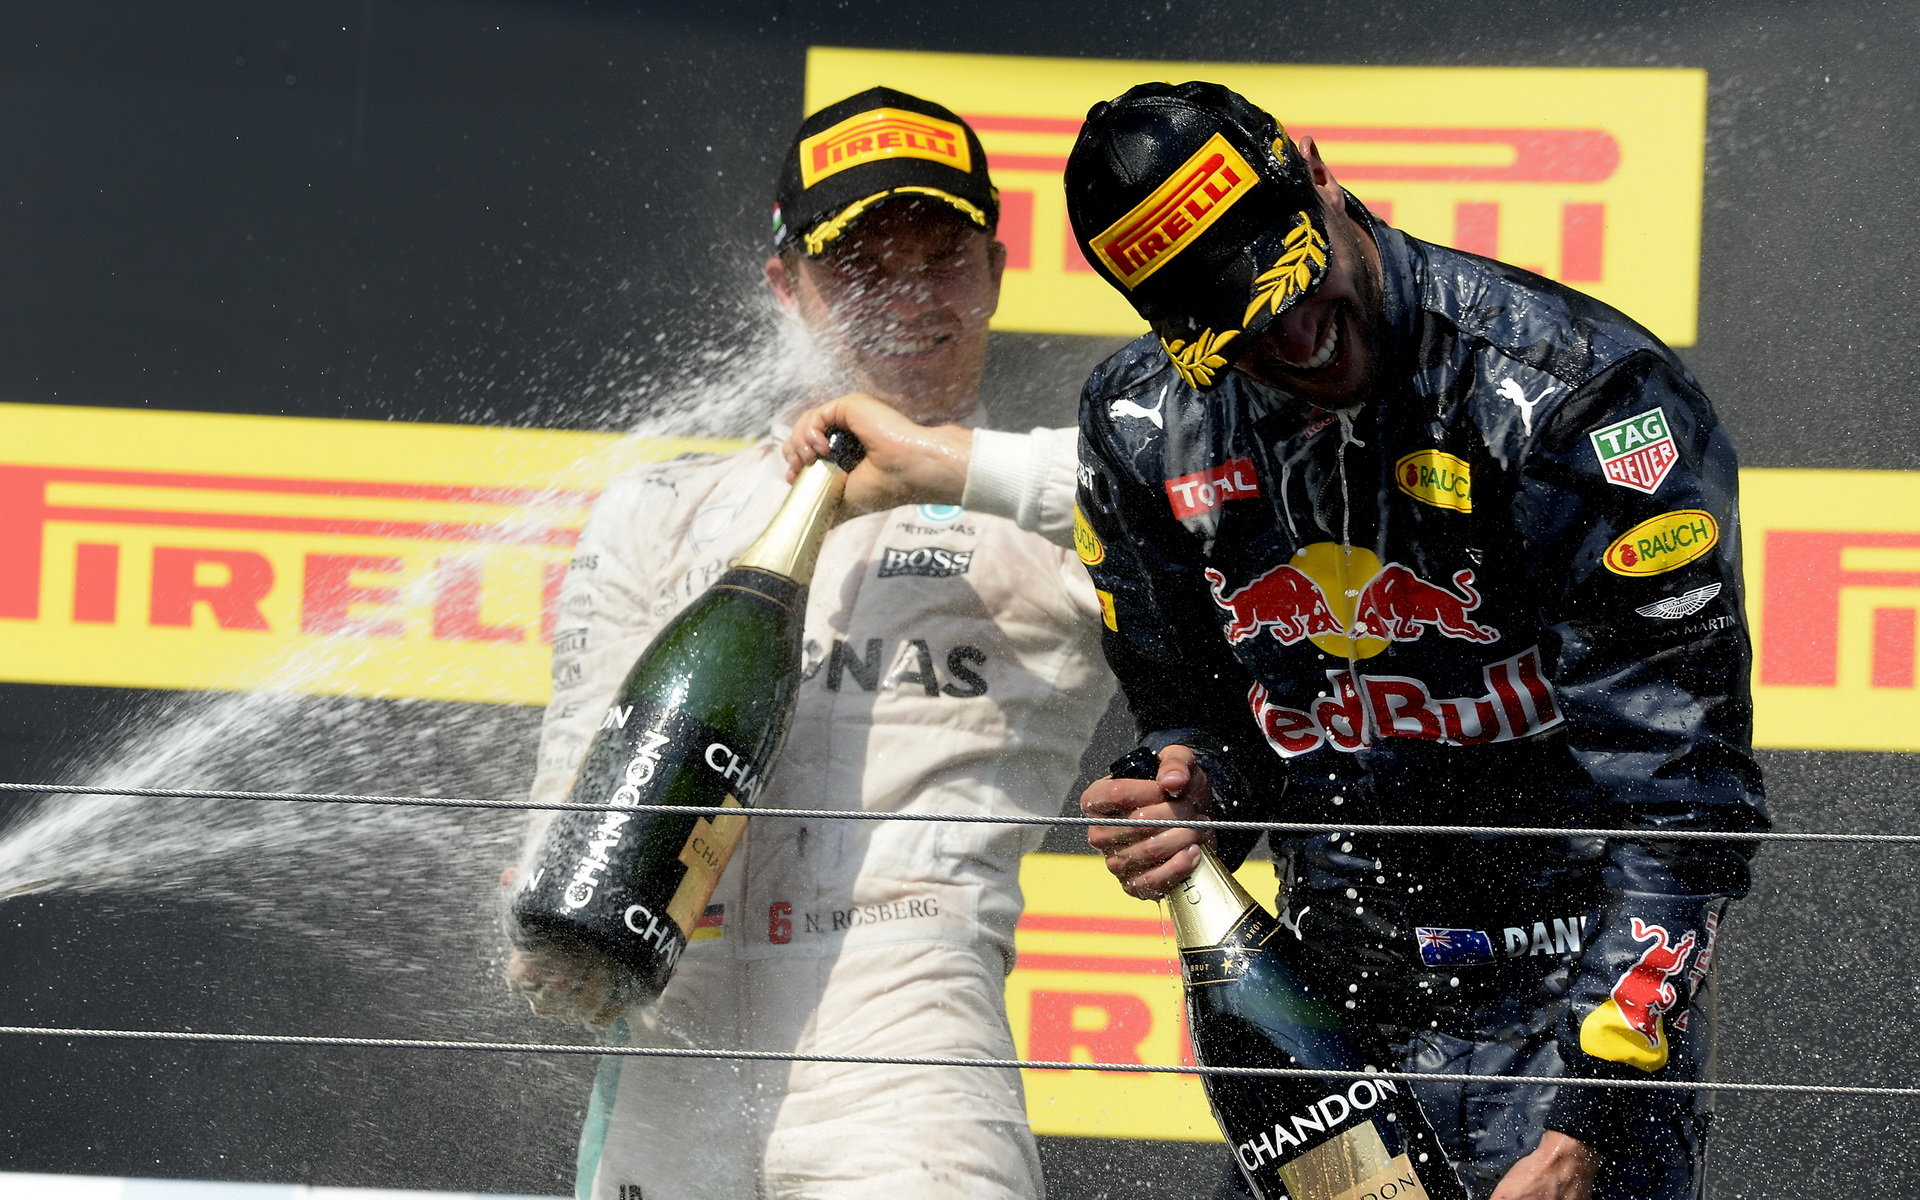 Nico Rosberg a Daniel Ricciardo slaví po závodě v Maďarsku